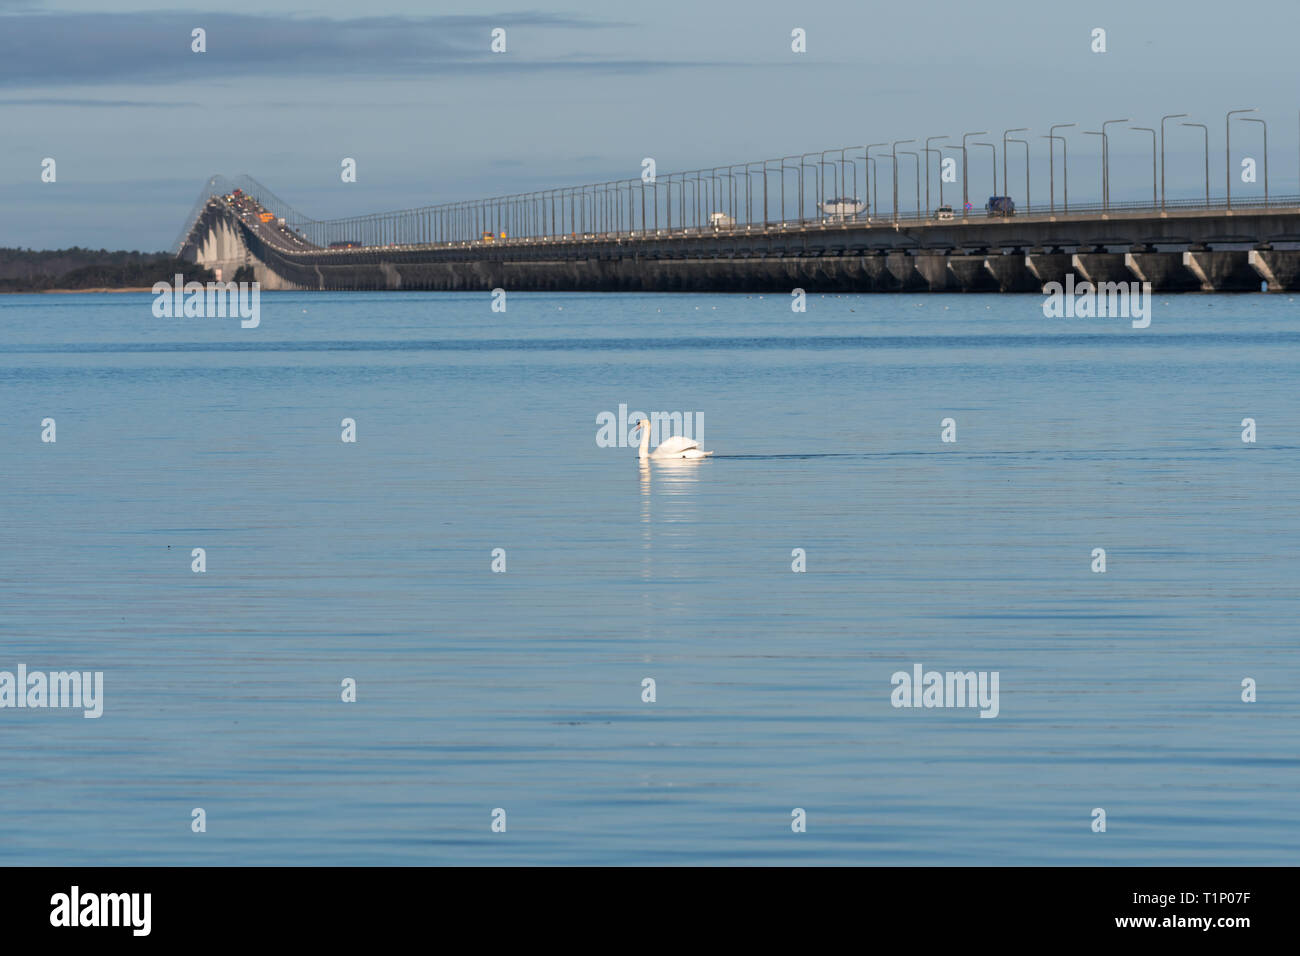 Die Olandbridge - ein Wahrzeichen der Insel Oland mit Festland Schweden Stockfoto